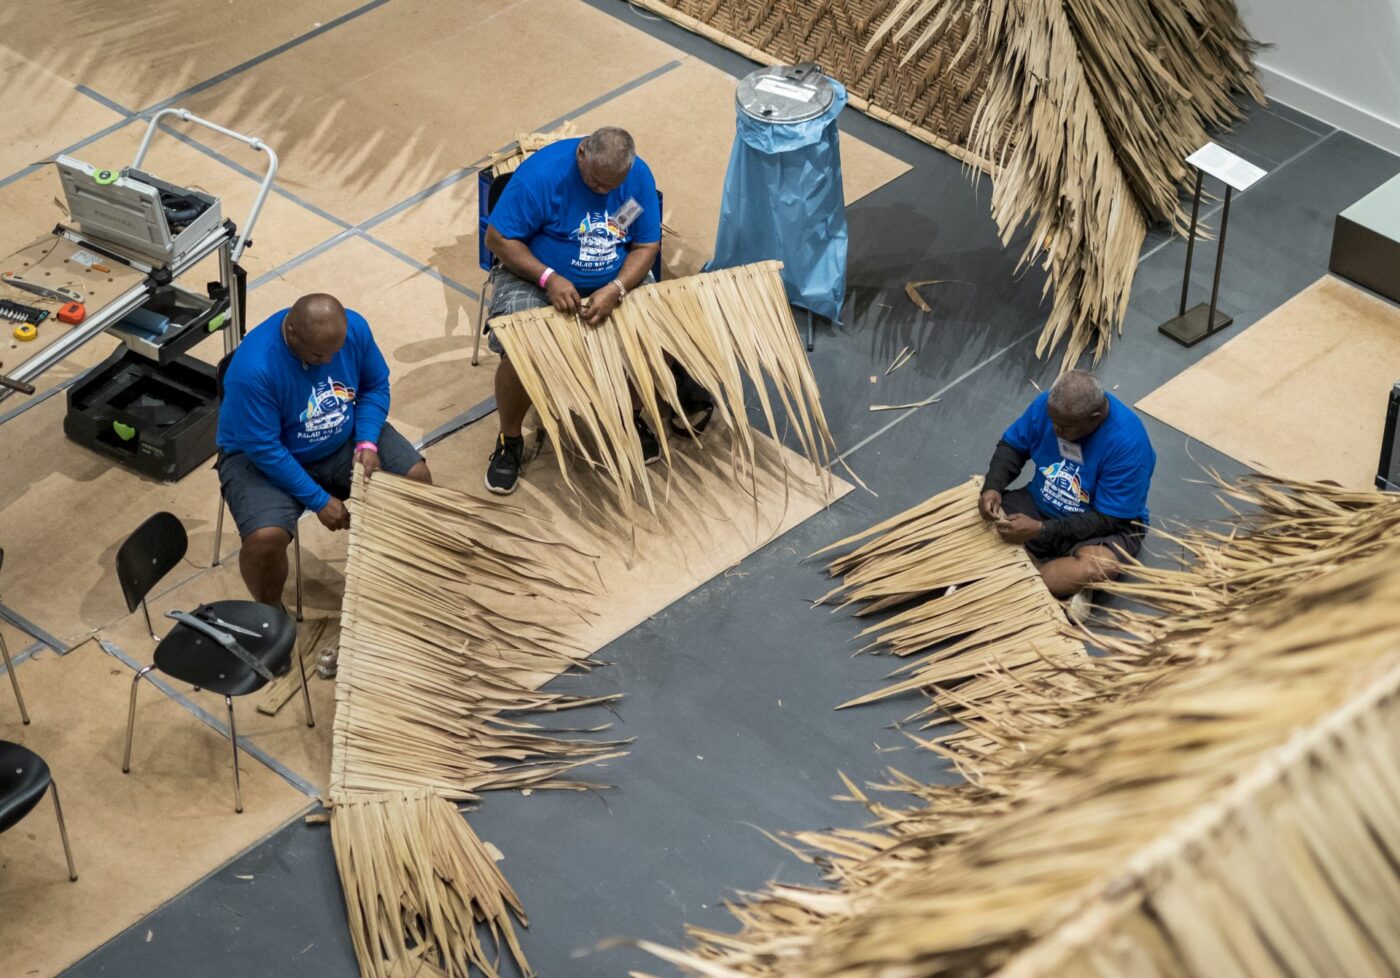 Handwerker von der Insel Palau decken das Dach des Versammlungshauses im Humboldt Forum © SPK / photothek